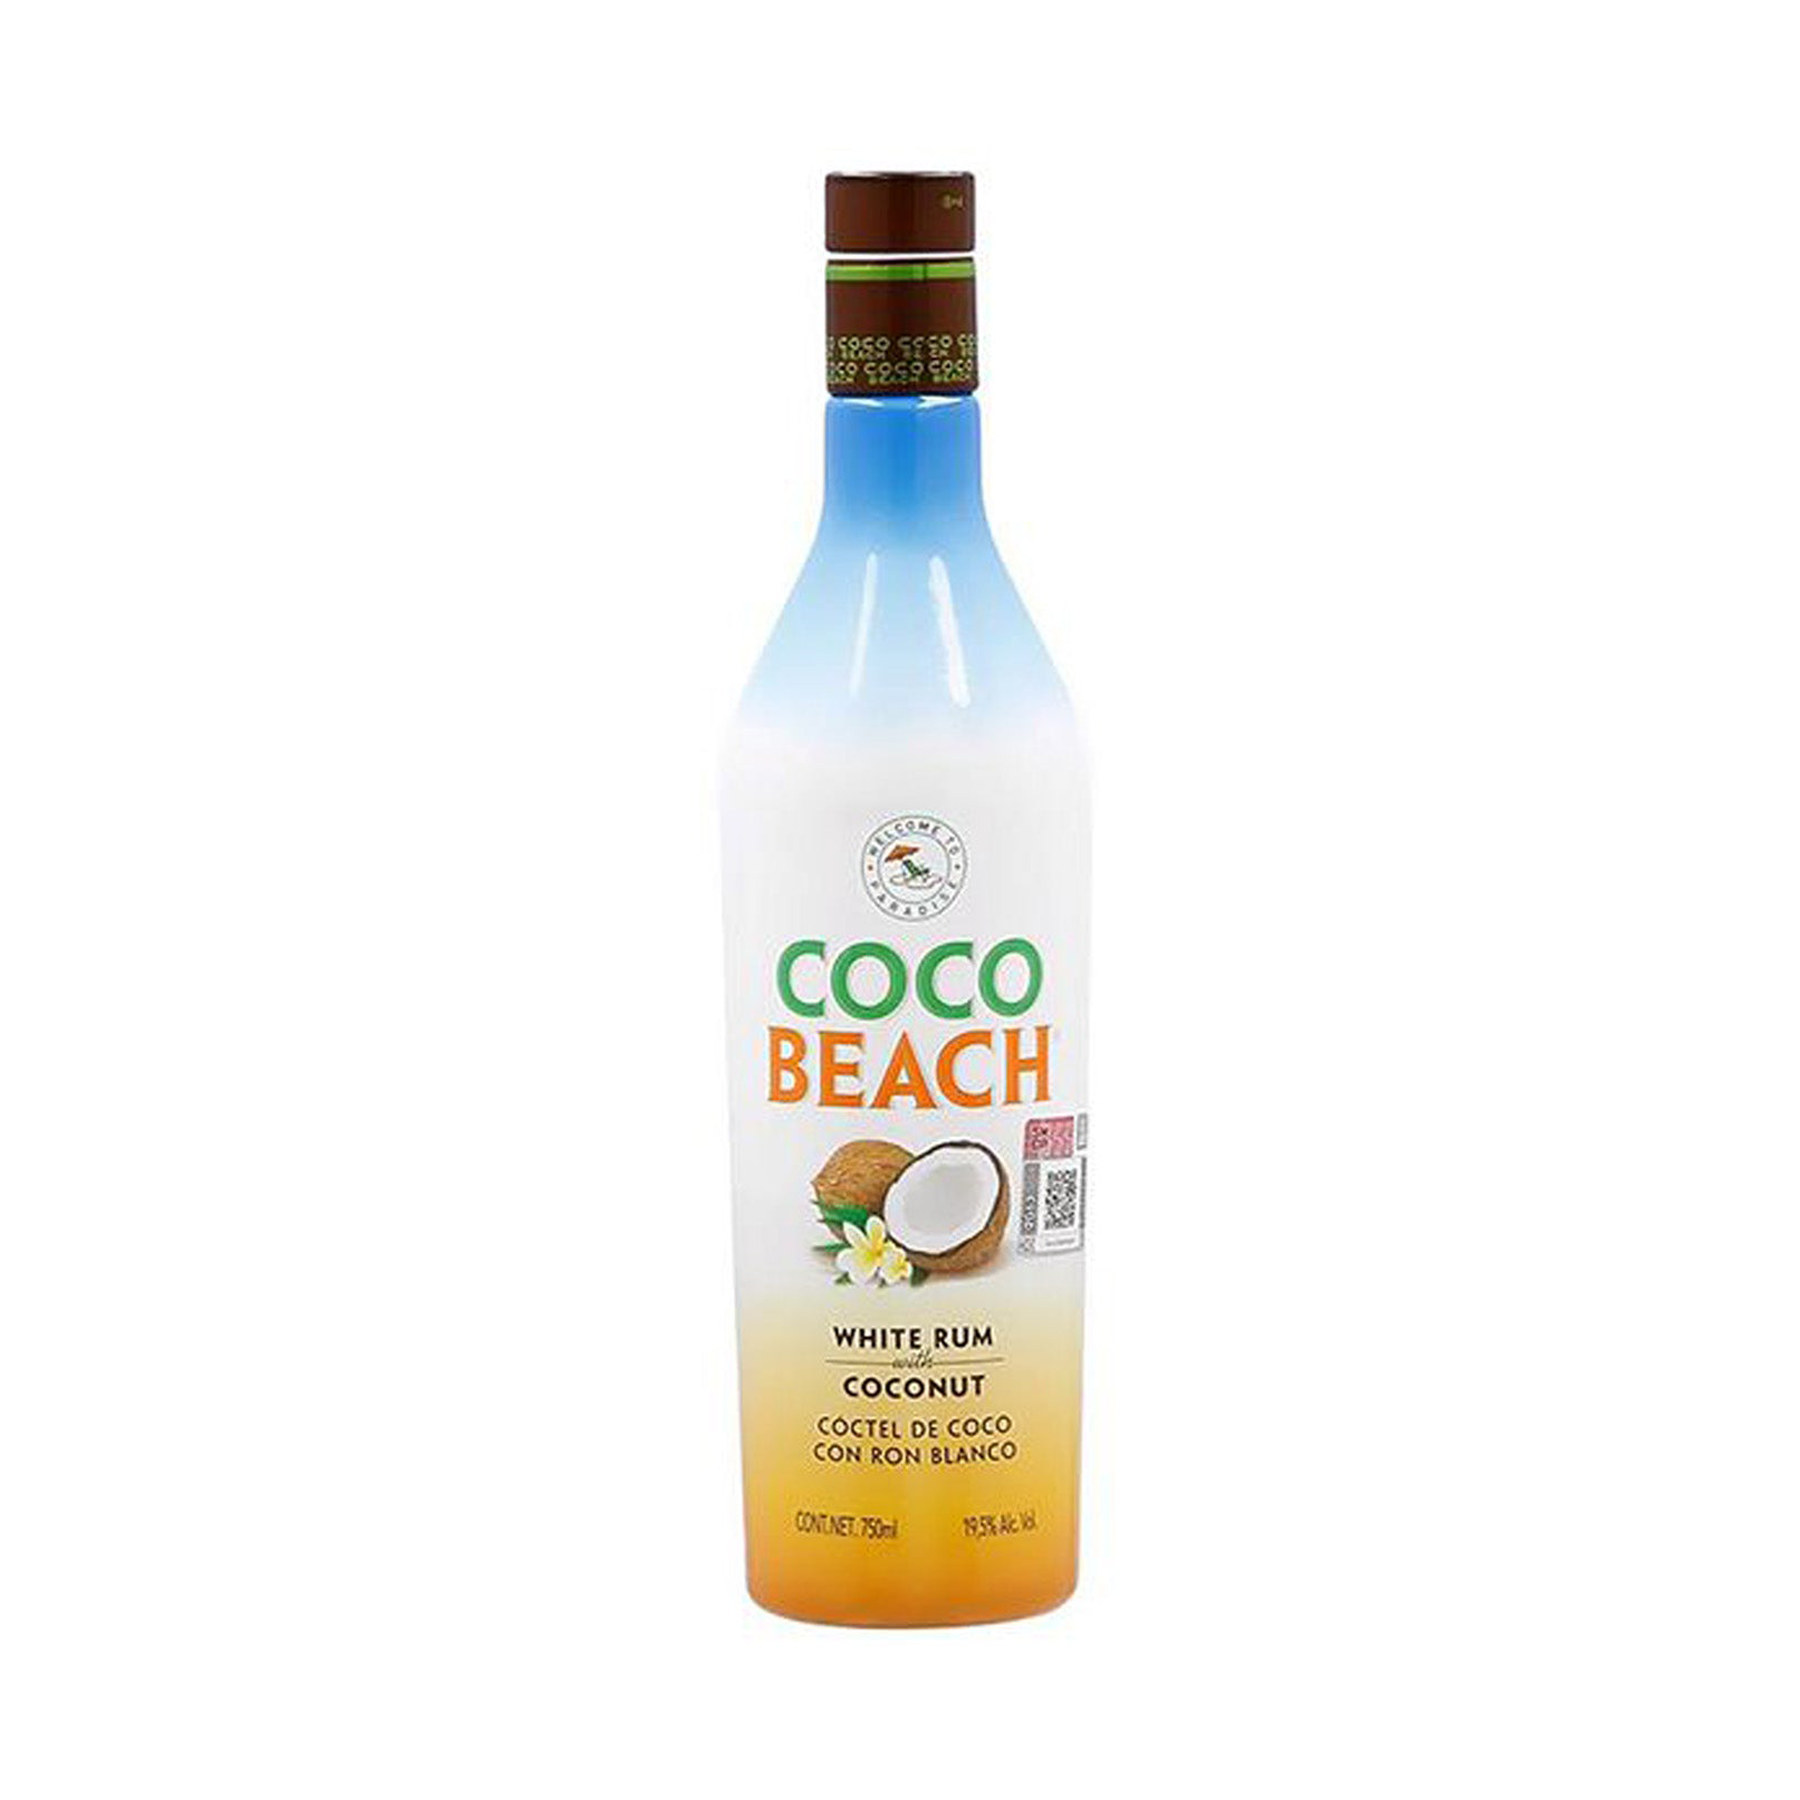 COCO BEACH 750 MLT 19.5%